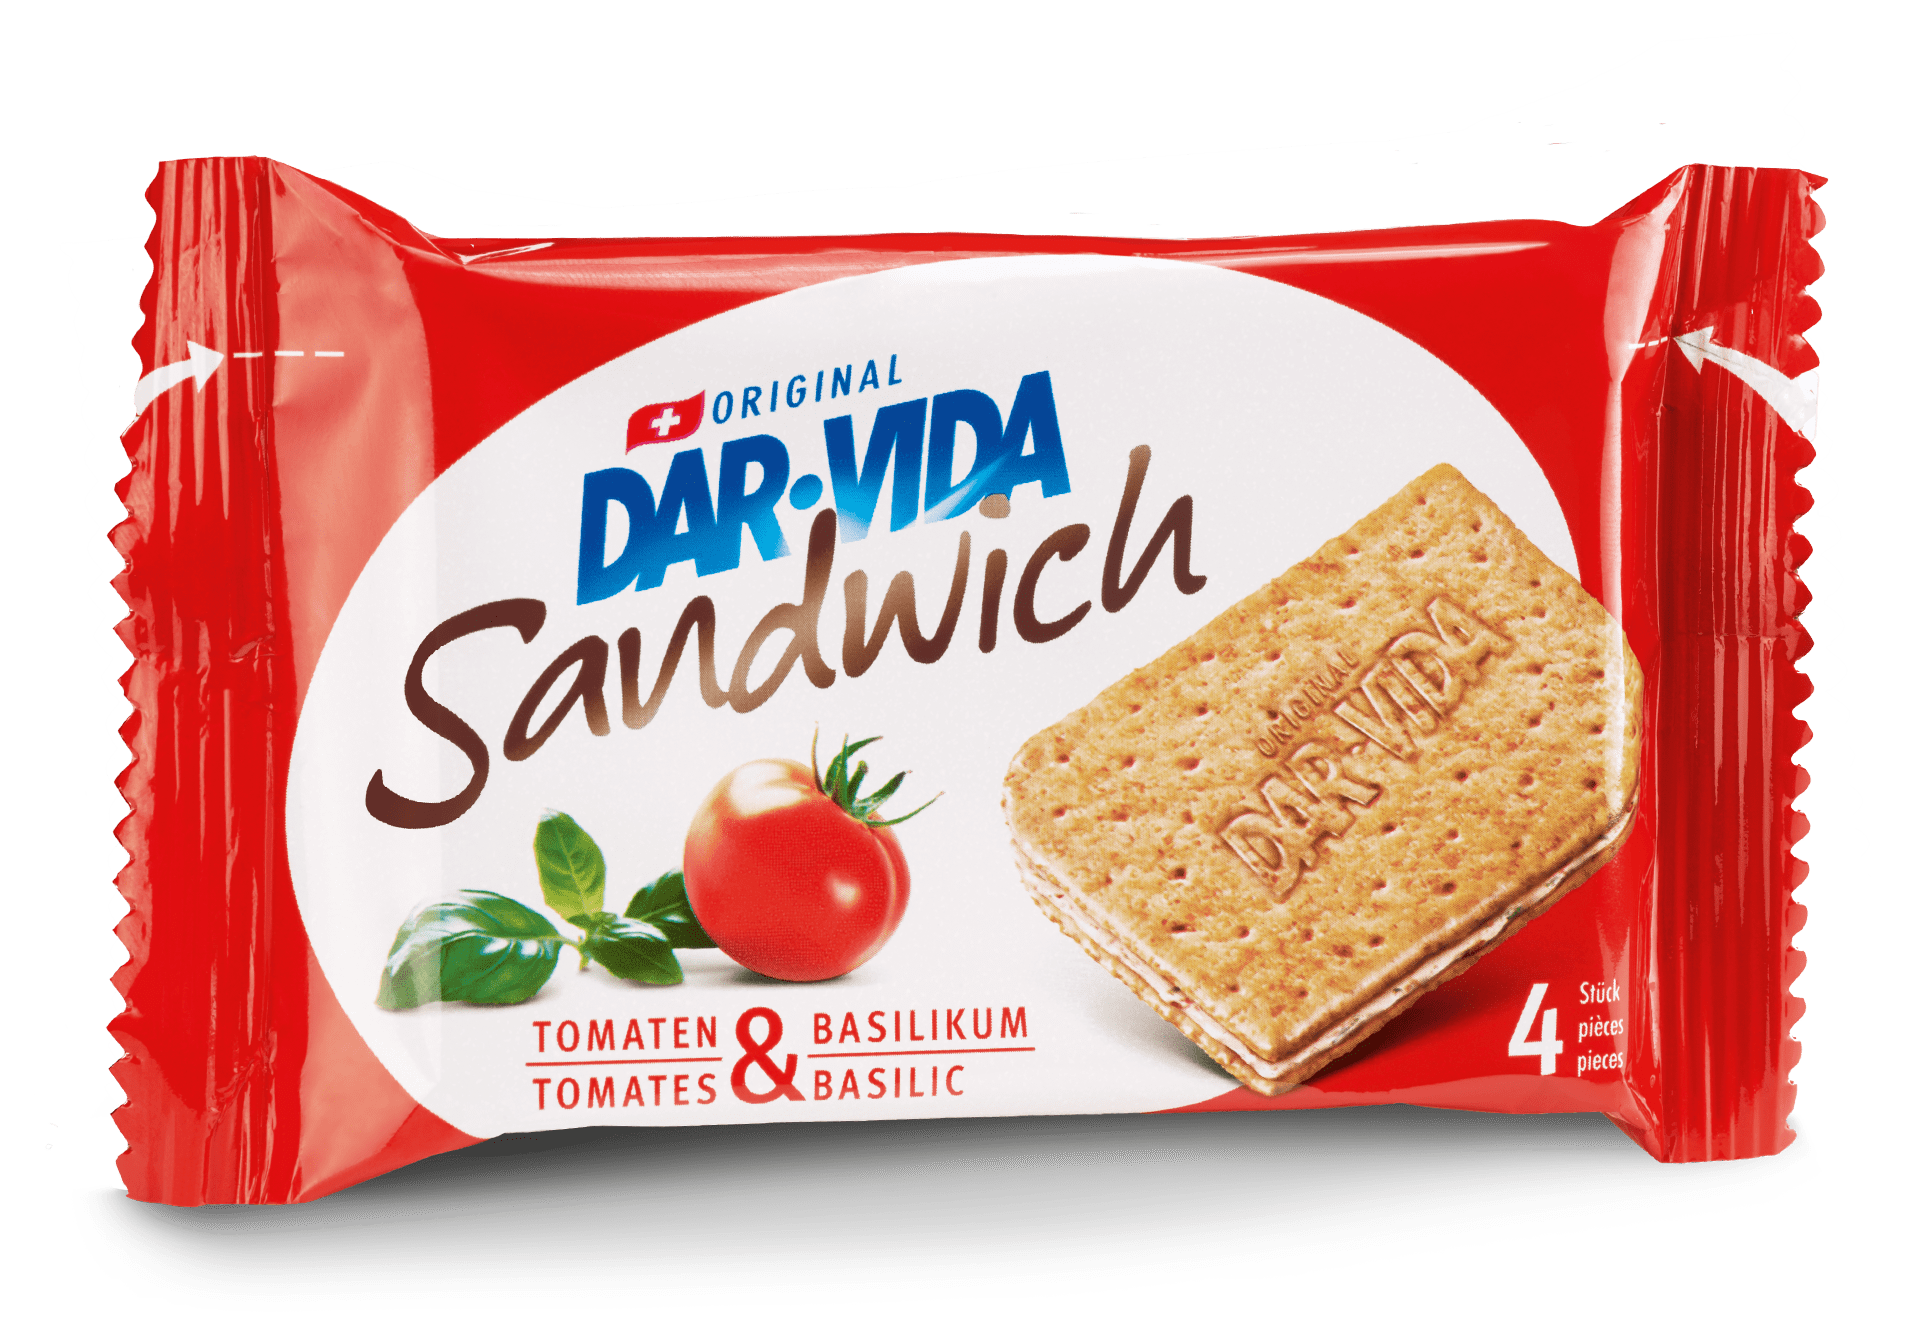 DAR-VIDA Sandwich Tomatoes & basil